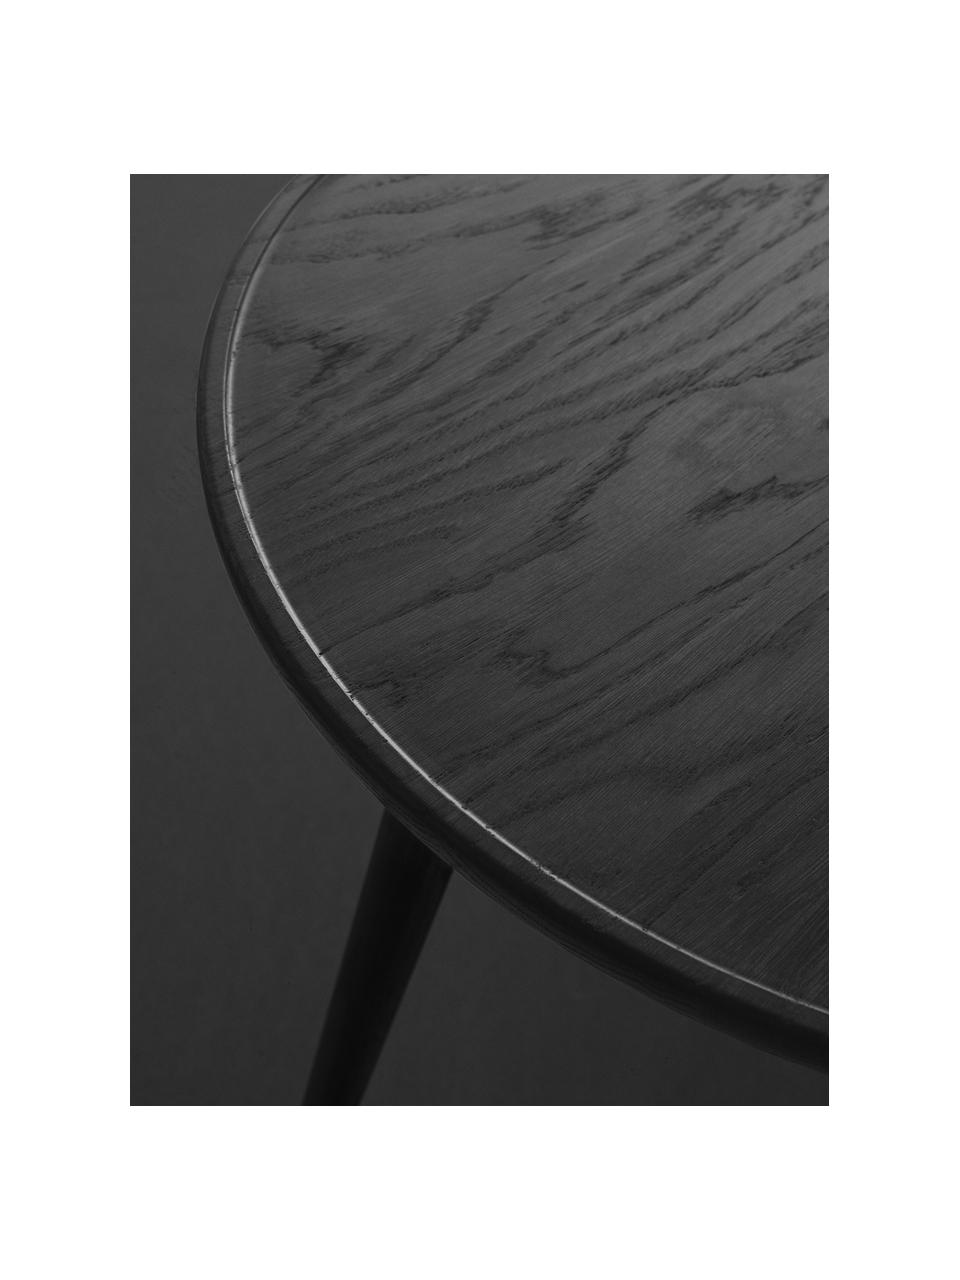 Table d'appoint artisanale en bois de chêne Accent, Bois de chêne, certifié FSC, Noir, Ø 45 x haut. 42 cm